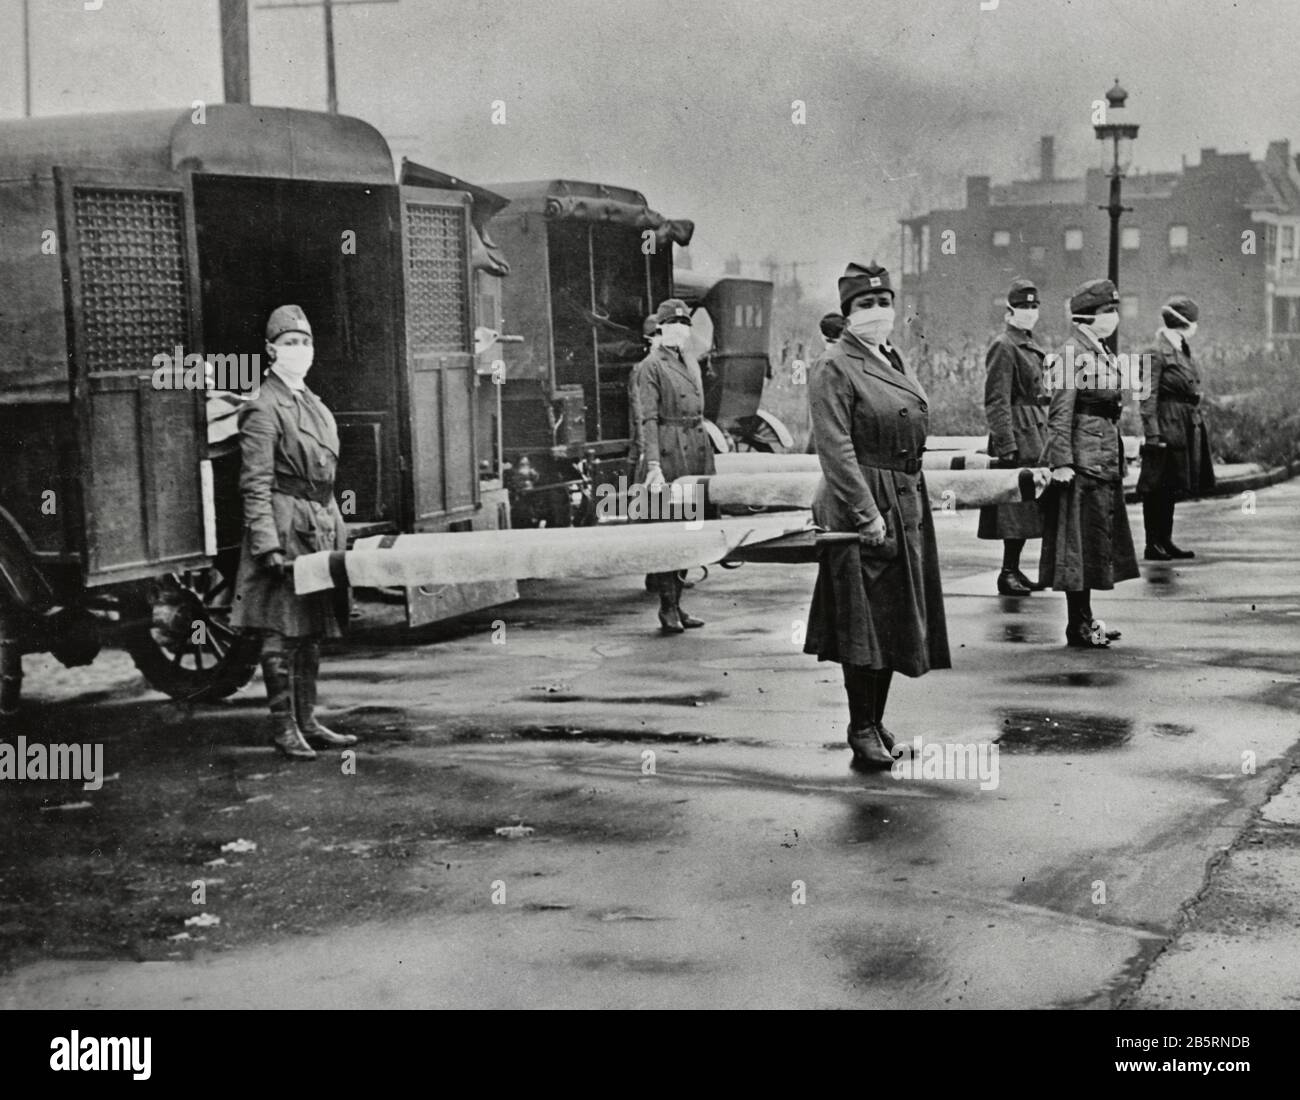 St. Louis Red Cross Motor Corps im Dienst Okt. 1918 Influenza-Epidemie. Das Foto zeigt maskierte Frauen, die Trage auf dem Rücken von Rettungswagen halten. Stockfoto